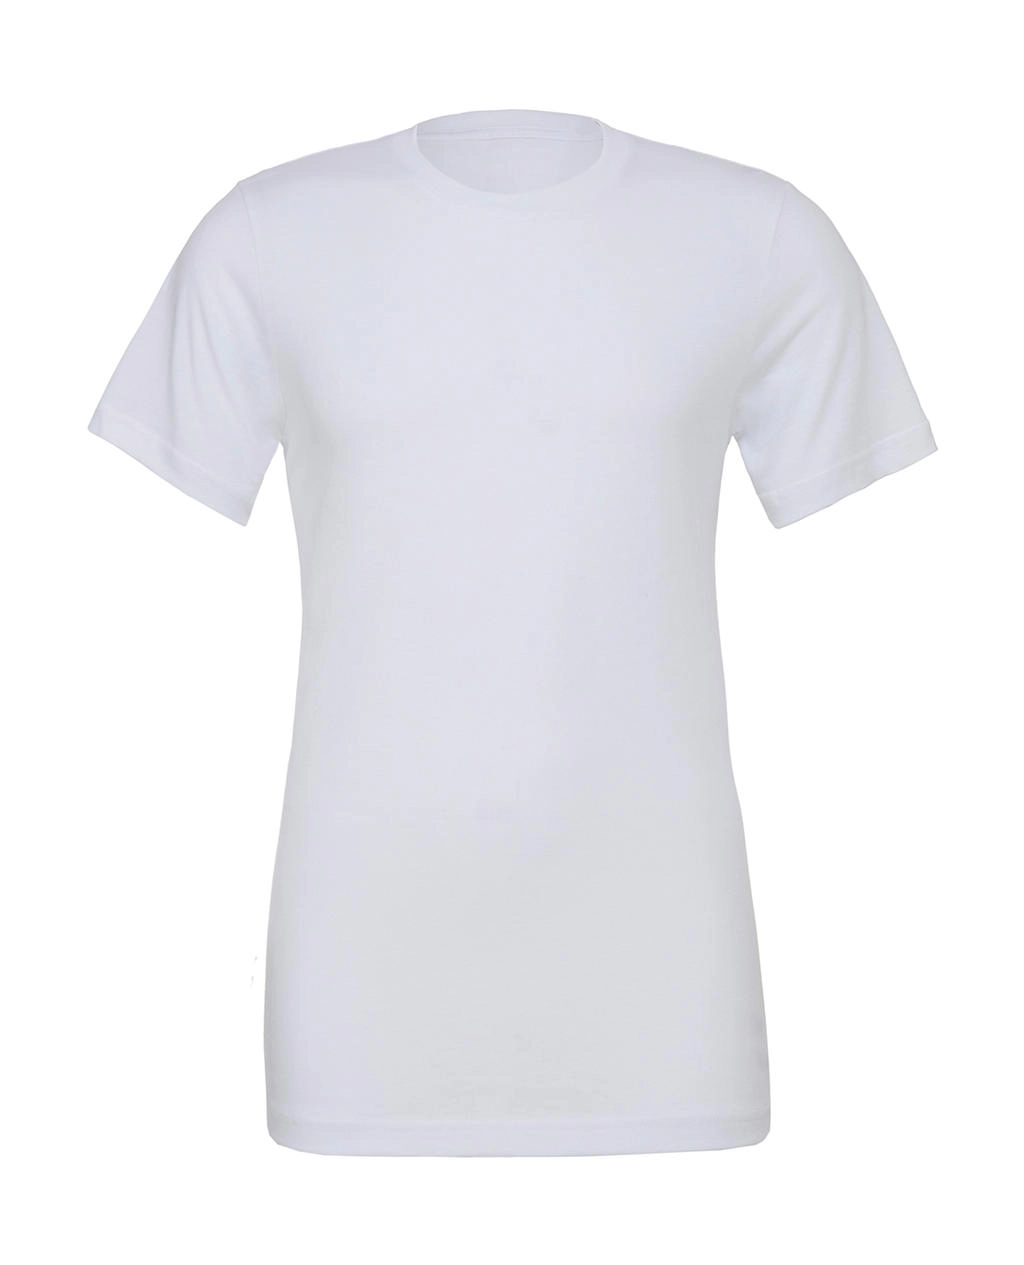 Unisex Poly-Cotton T-Shirt zum Besticken und Bedrucken in der Farbe White mit Ihren Logo, Schriftzug oder Motiv.